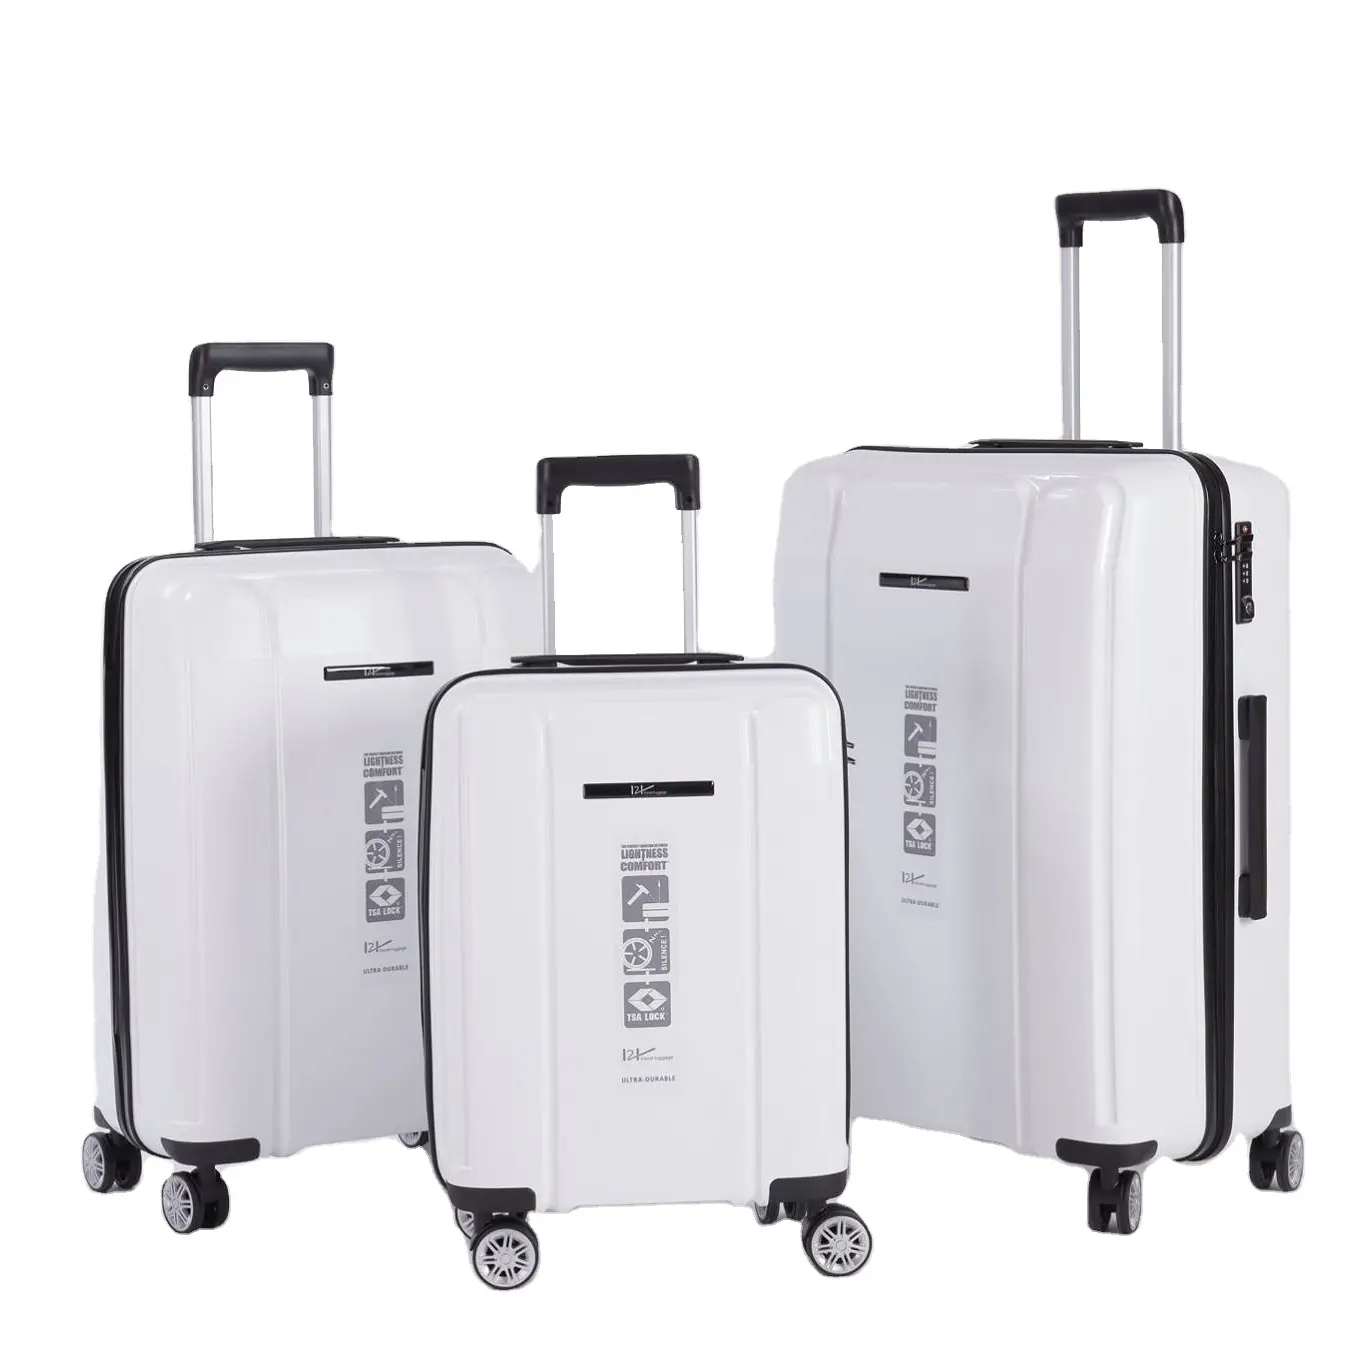 2 шт. в 1 наборе, Модный водонепроницаемый складной чемодан на колесиках для путешествий с сумкой-тоутом для женщин